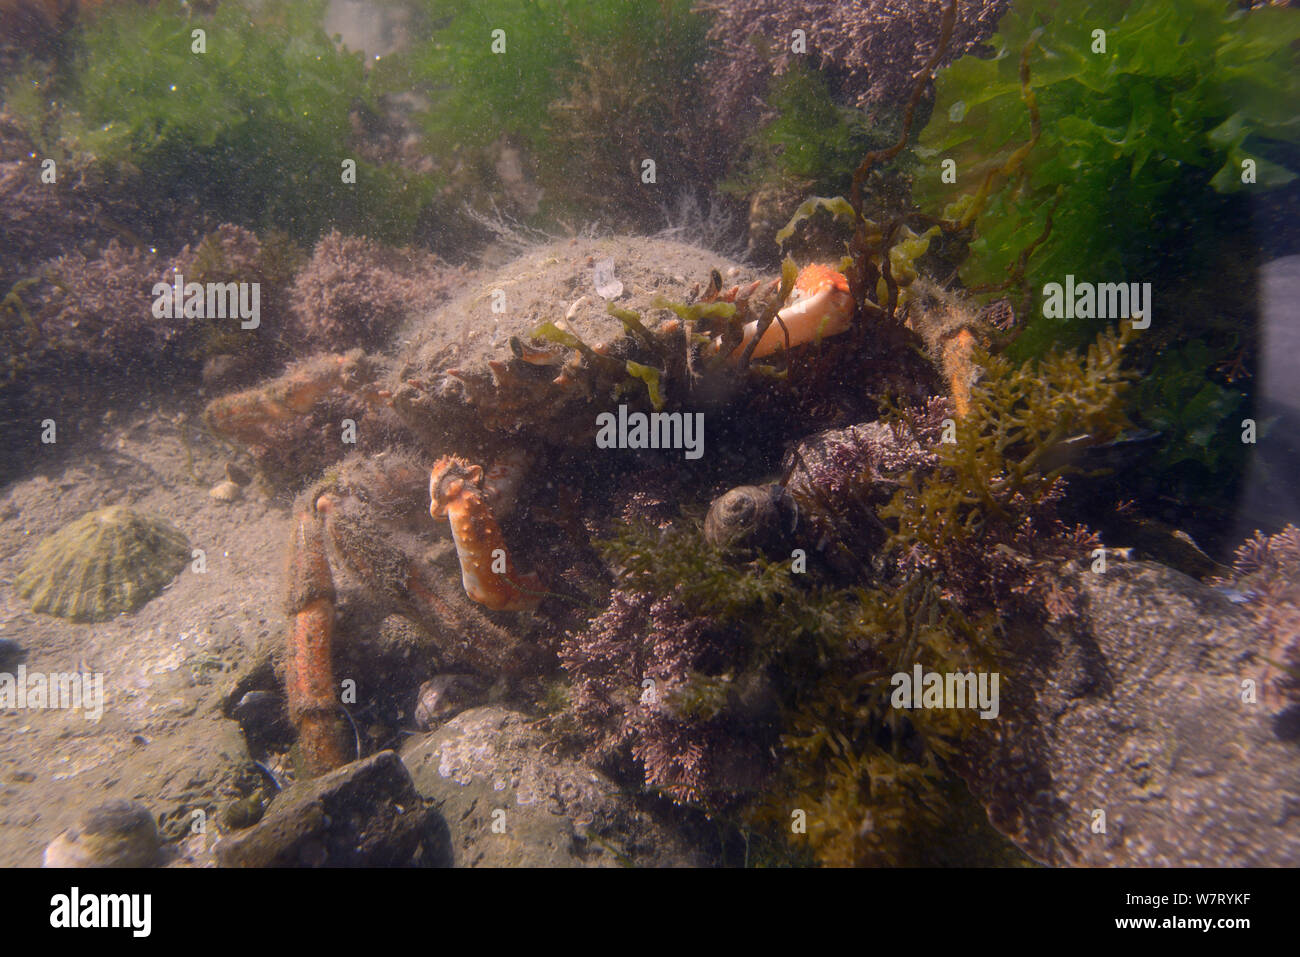 Les femelles (araignée de mer Maja brachydactyla / Maja squinado) bien camouflée dans un Coralweed entre rockpool (Corallina officinalis), Rhossili, la péninsule de Gower, au Royaume-Uni, en juin. Banque D'Images